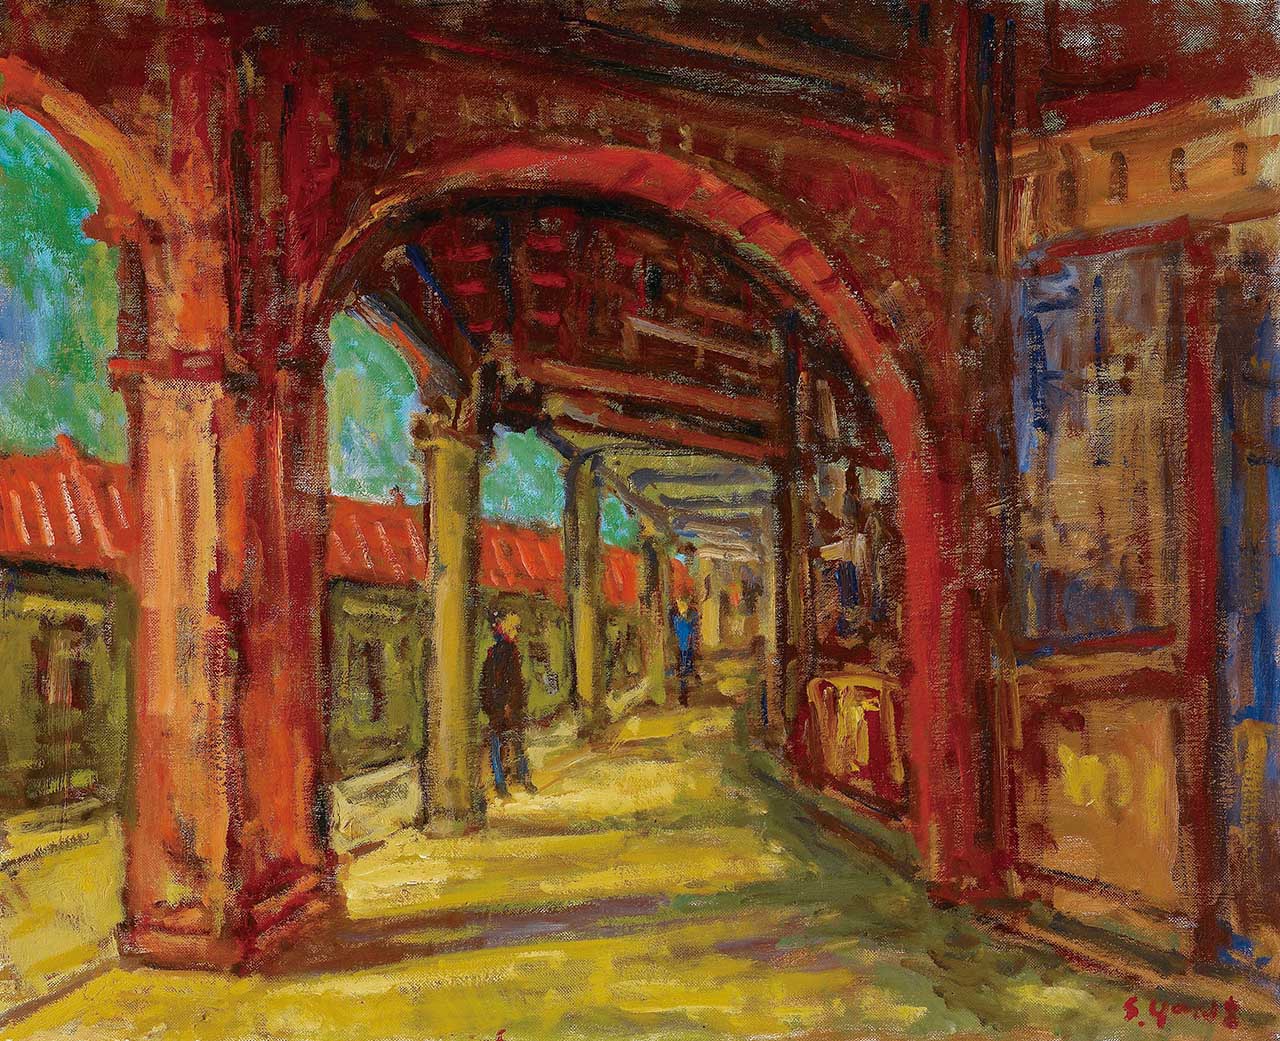 Jinshan Old Street Oil on canvas 65x80 cm